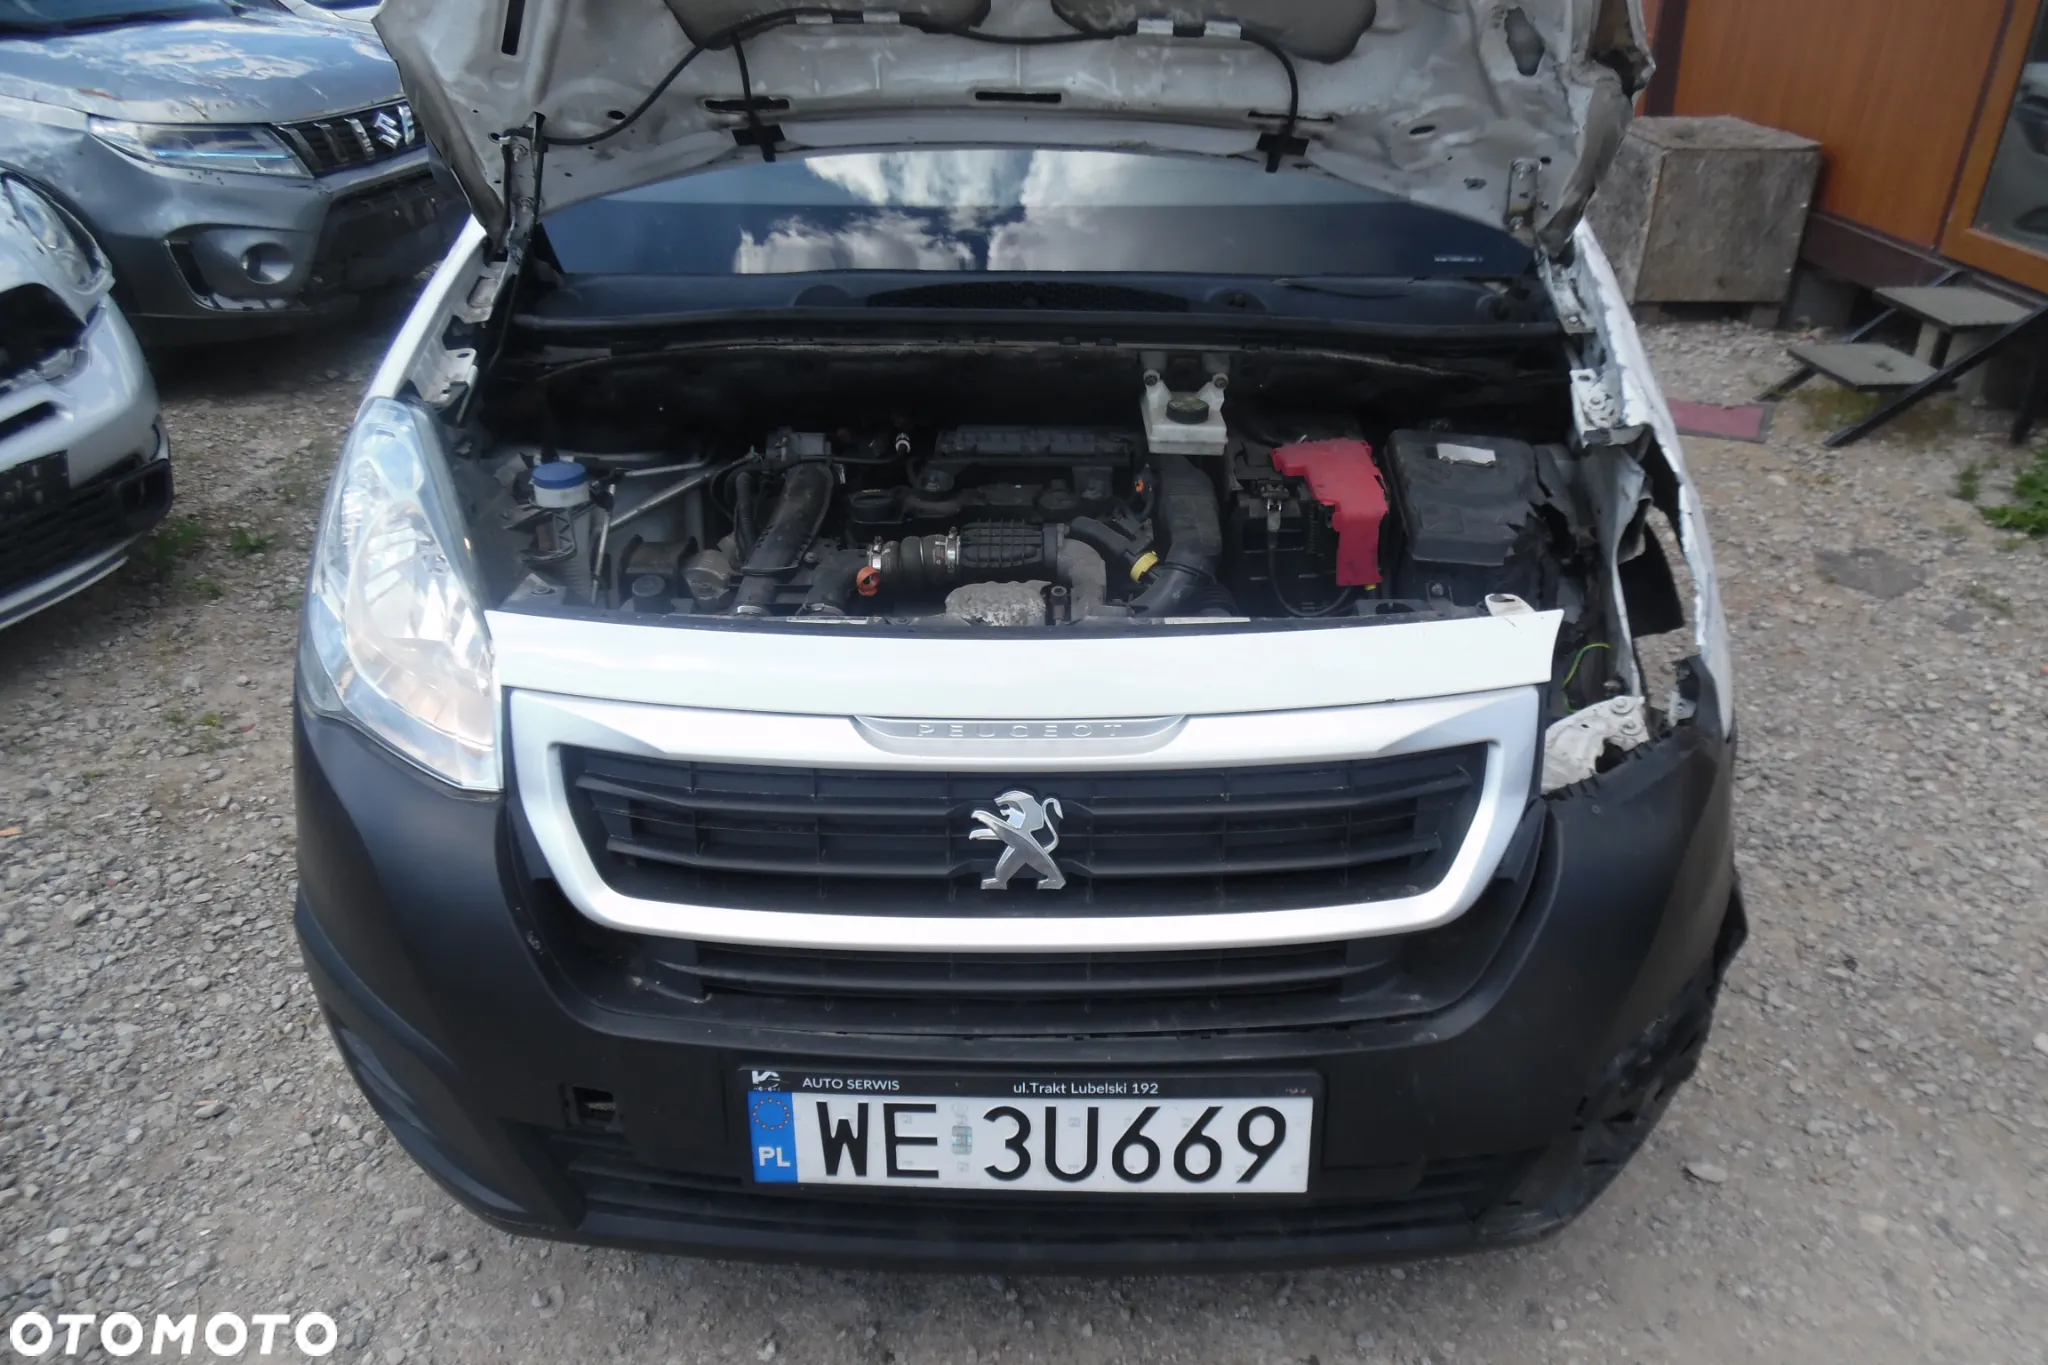 Peugeot Partner VAN - 5